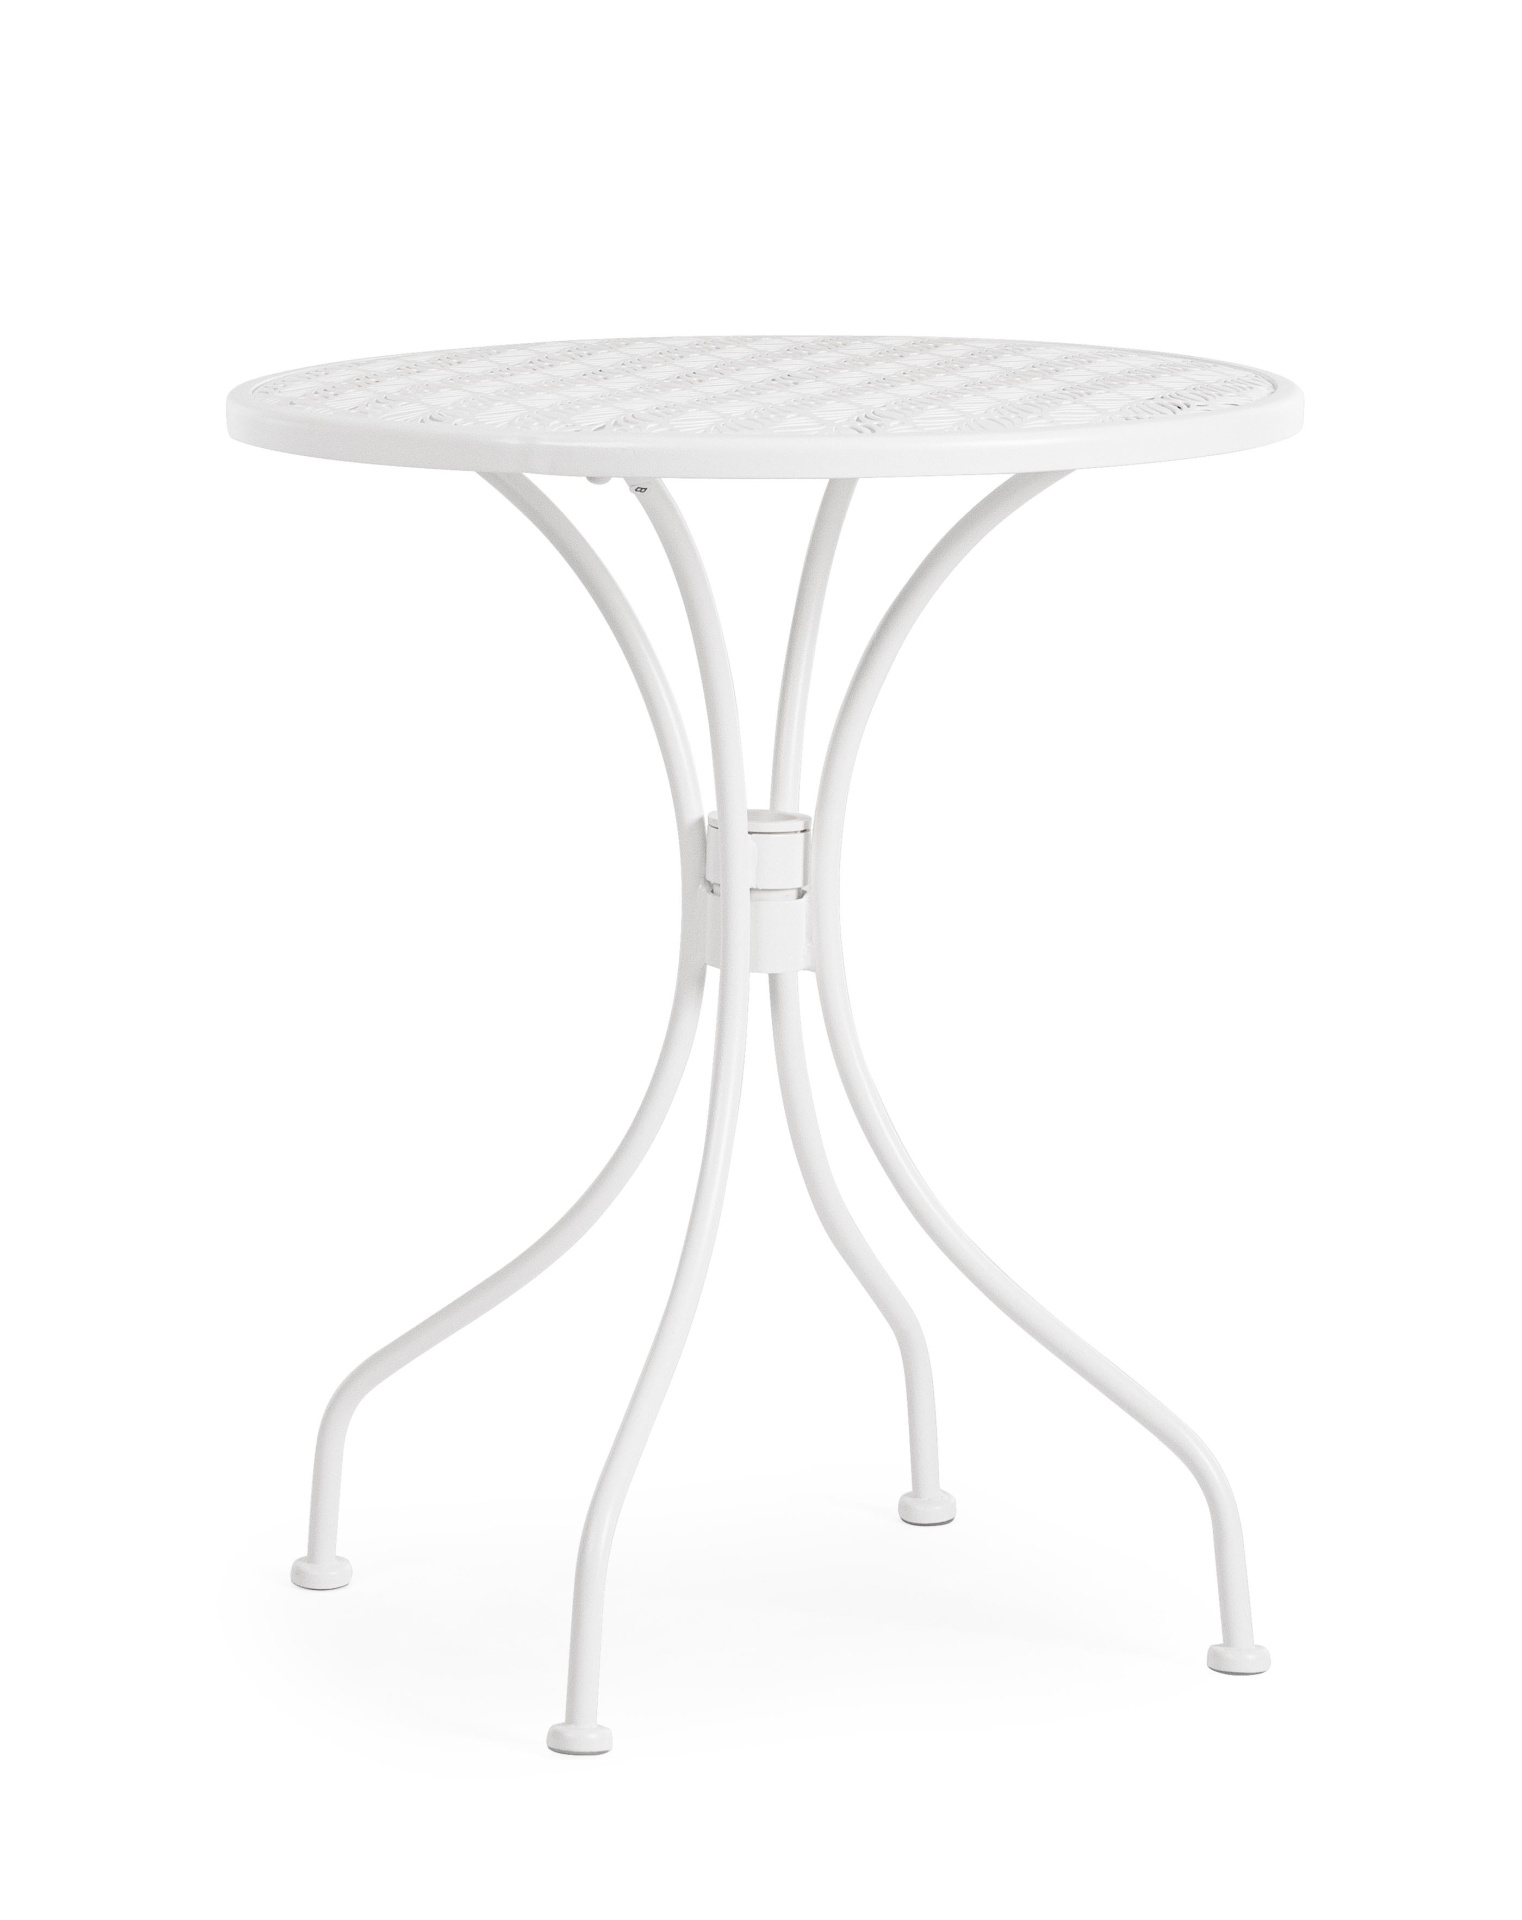 Der Gartentisch Lizette überzeugt mit seinem klassischen Design. Gefertigt wurde er aus Aluminium, welches einen weißen Farbton besitzt. Das Gestell ist aus auch Aluminium und hat eine weiße Farbe. Der Tisch verfügt über einen Durchmesser von 60 cm und is